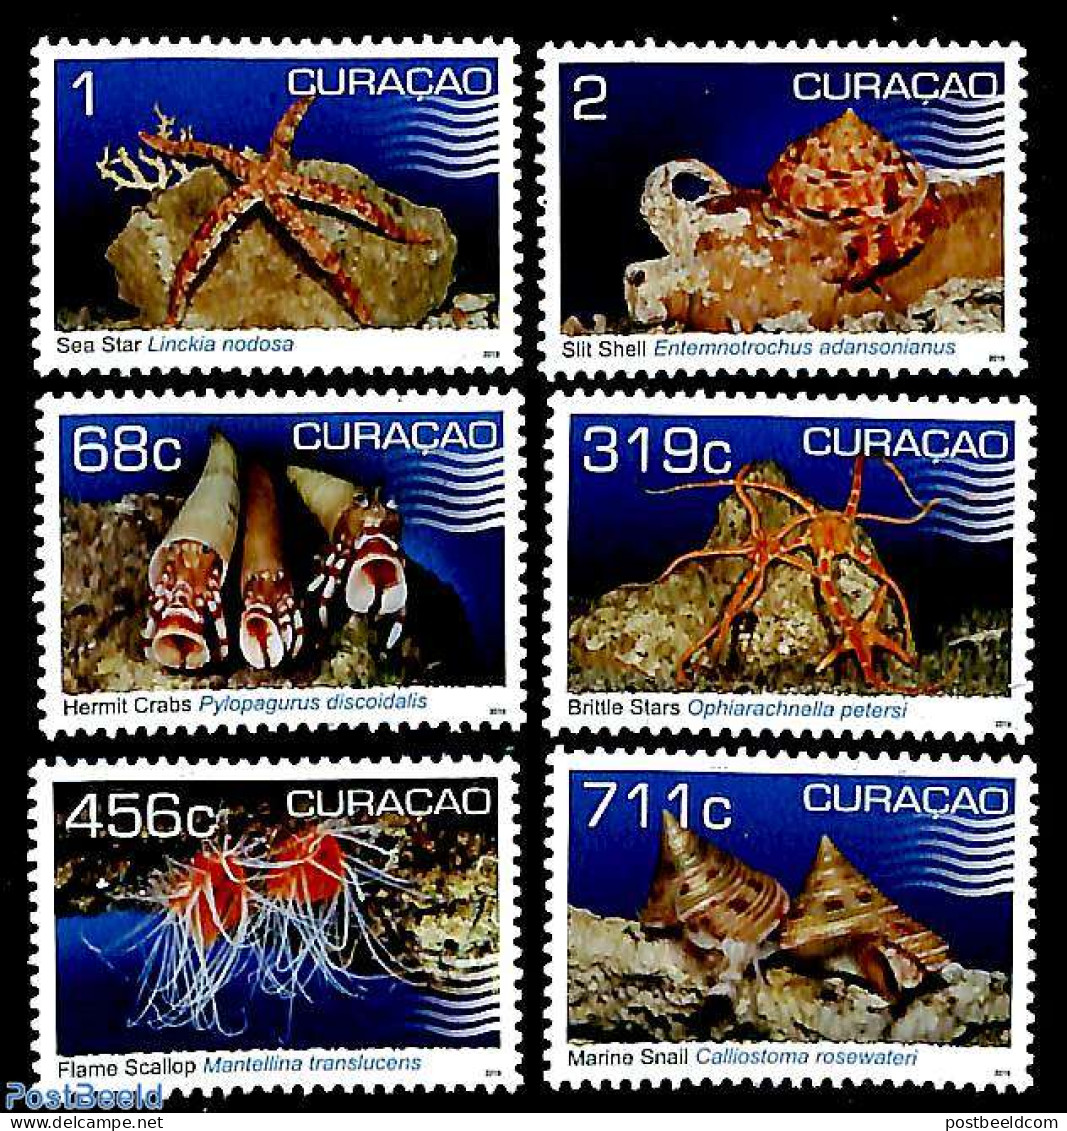 Curaçao 2019 Shellfish 6v, Mint NH, Nature - Shells & Crustaceans - Marine Life